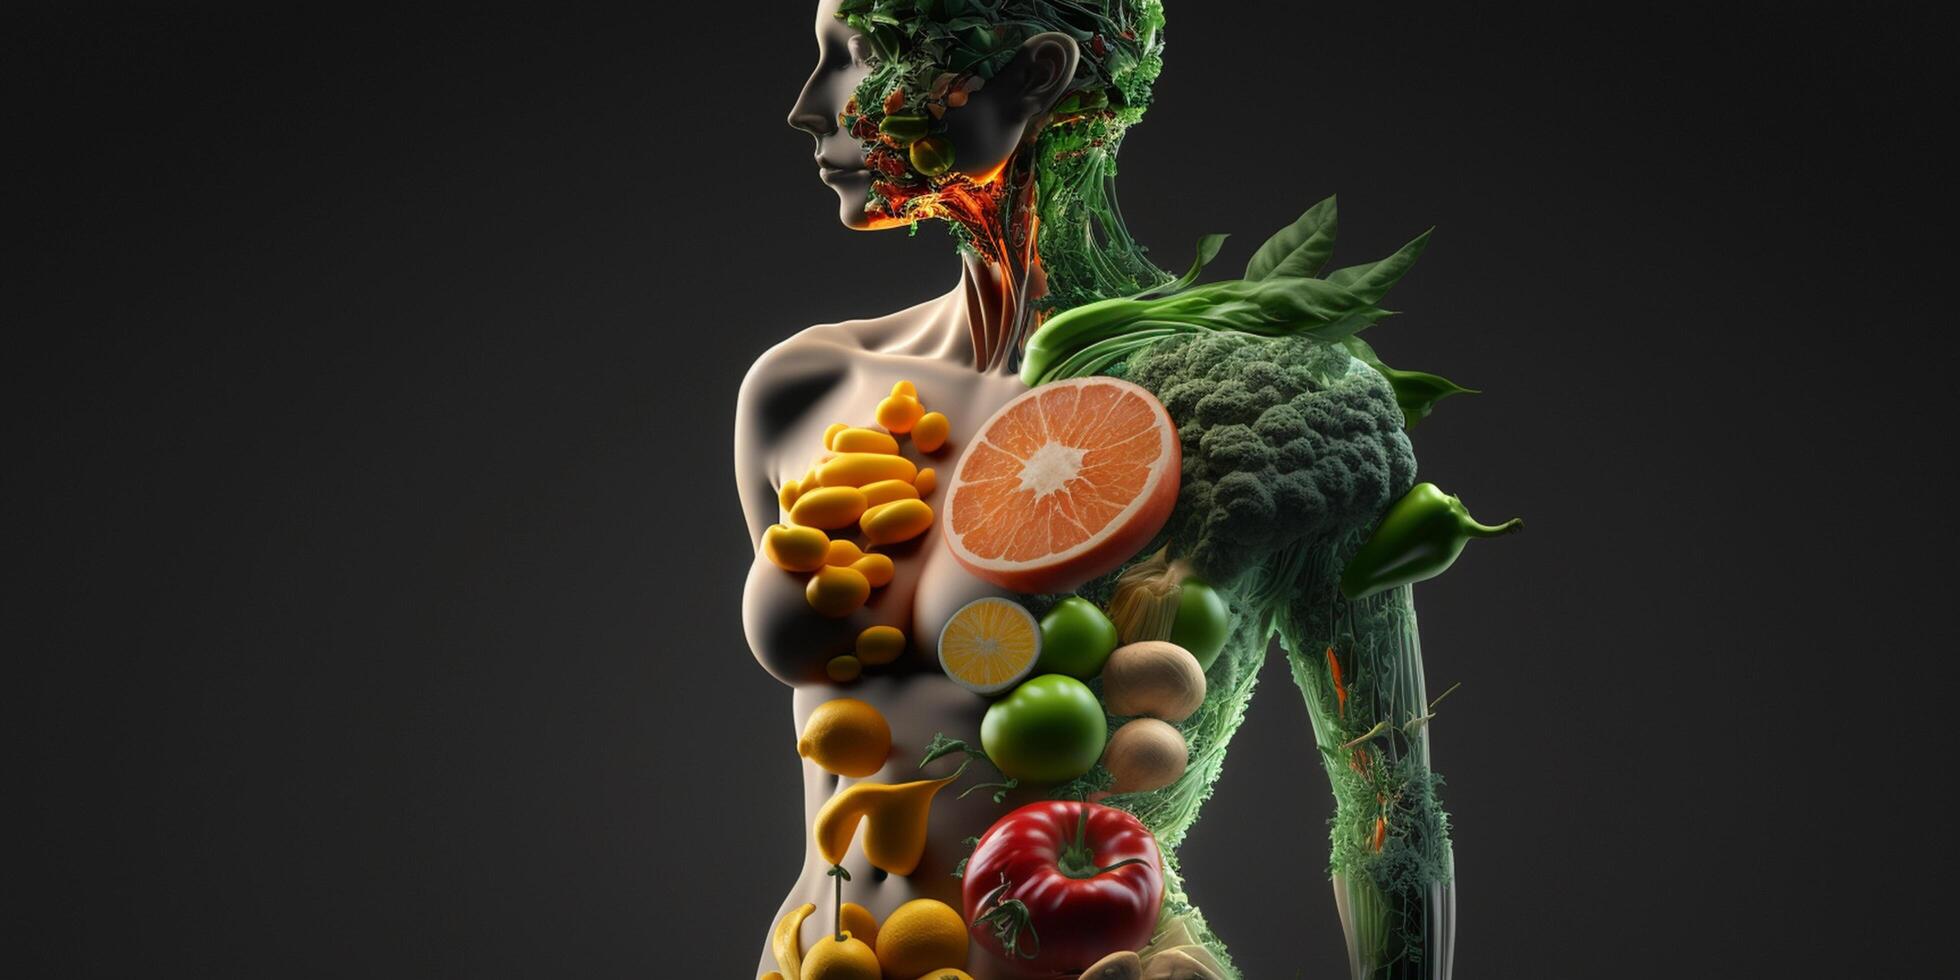 corpo salutare dieta disintossicazione frutta verdura alcalino dieta ai generato illustrazione foto